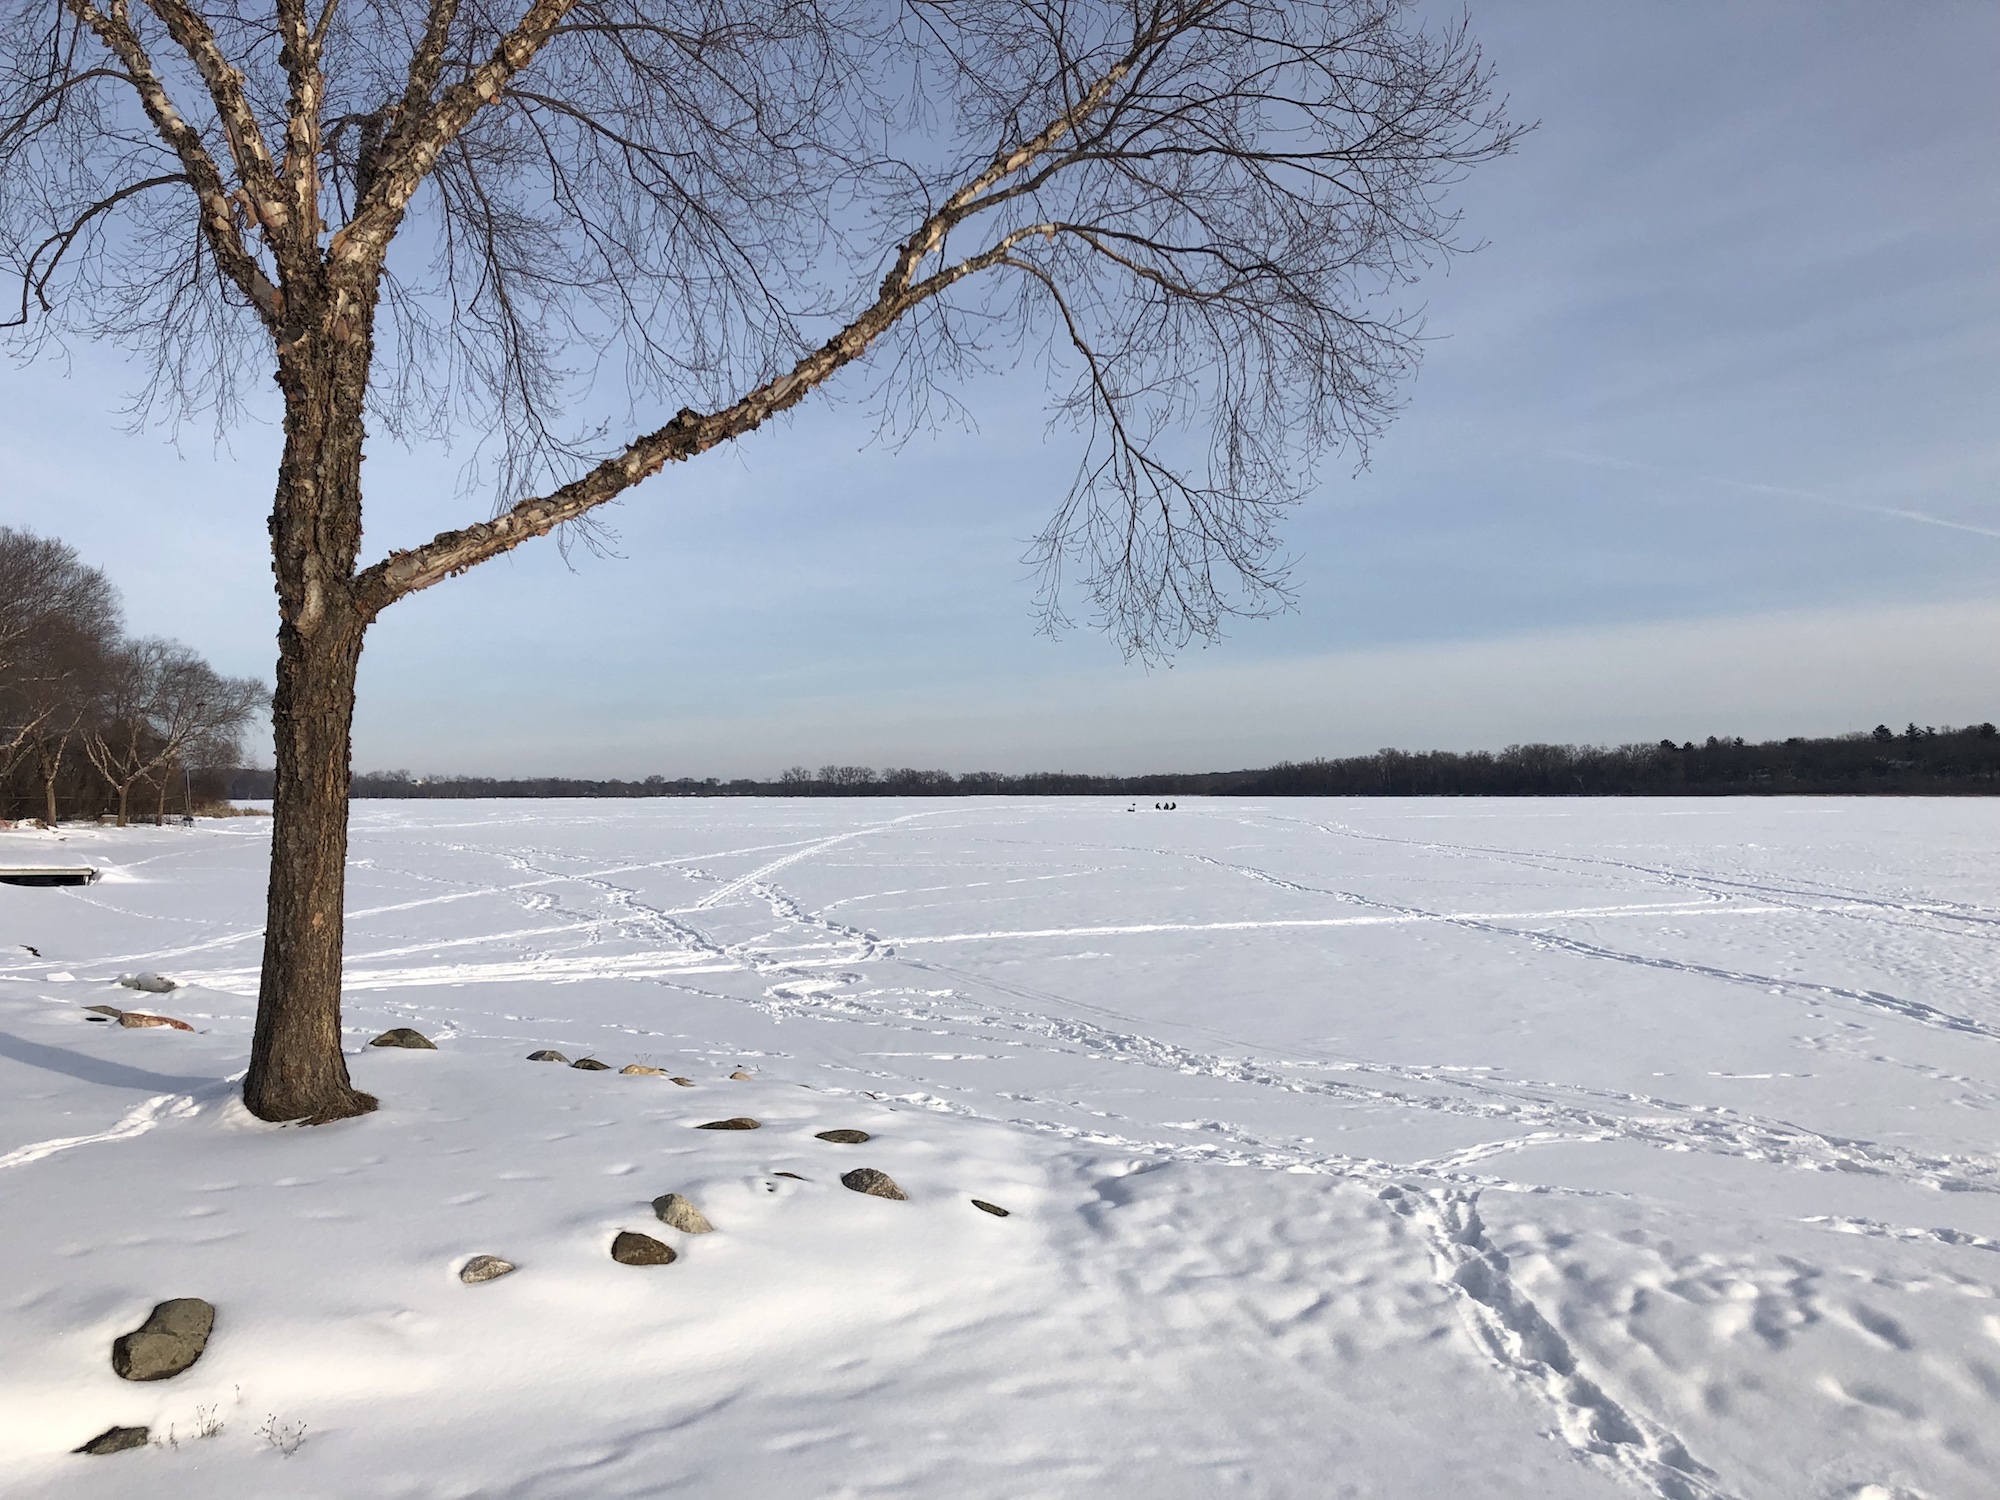 Lake Wingra on February 19, 2019.